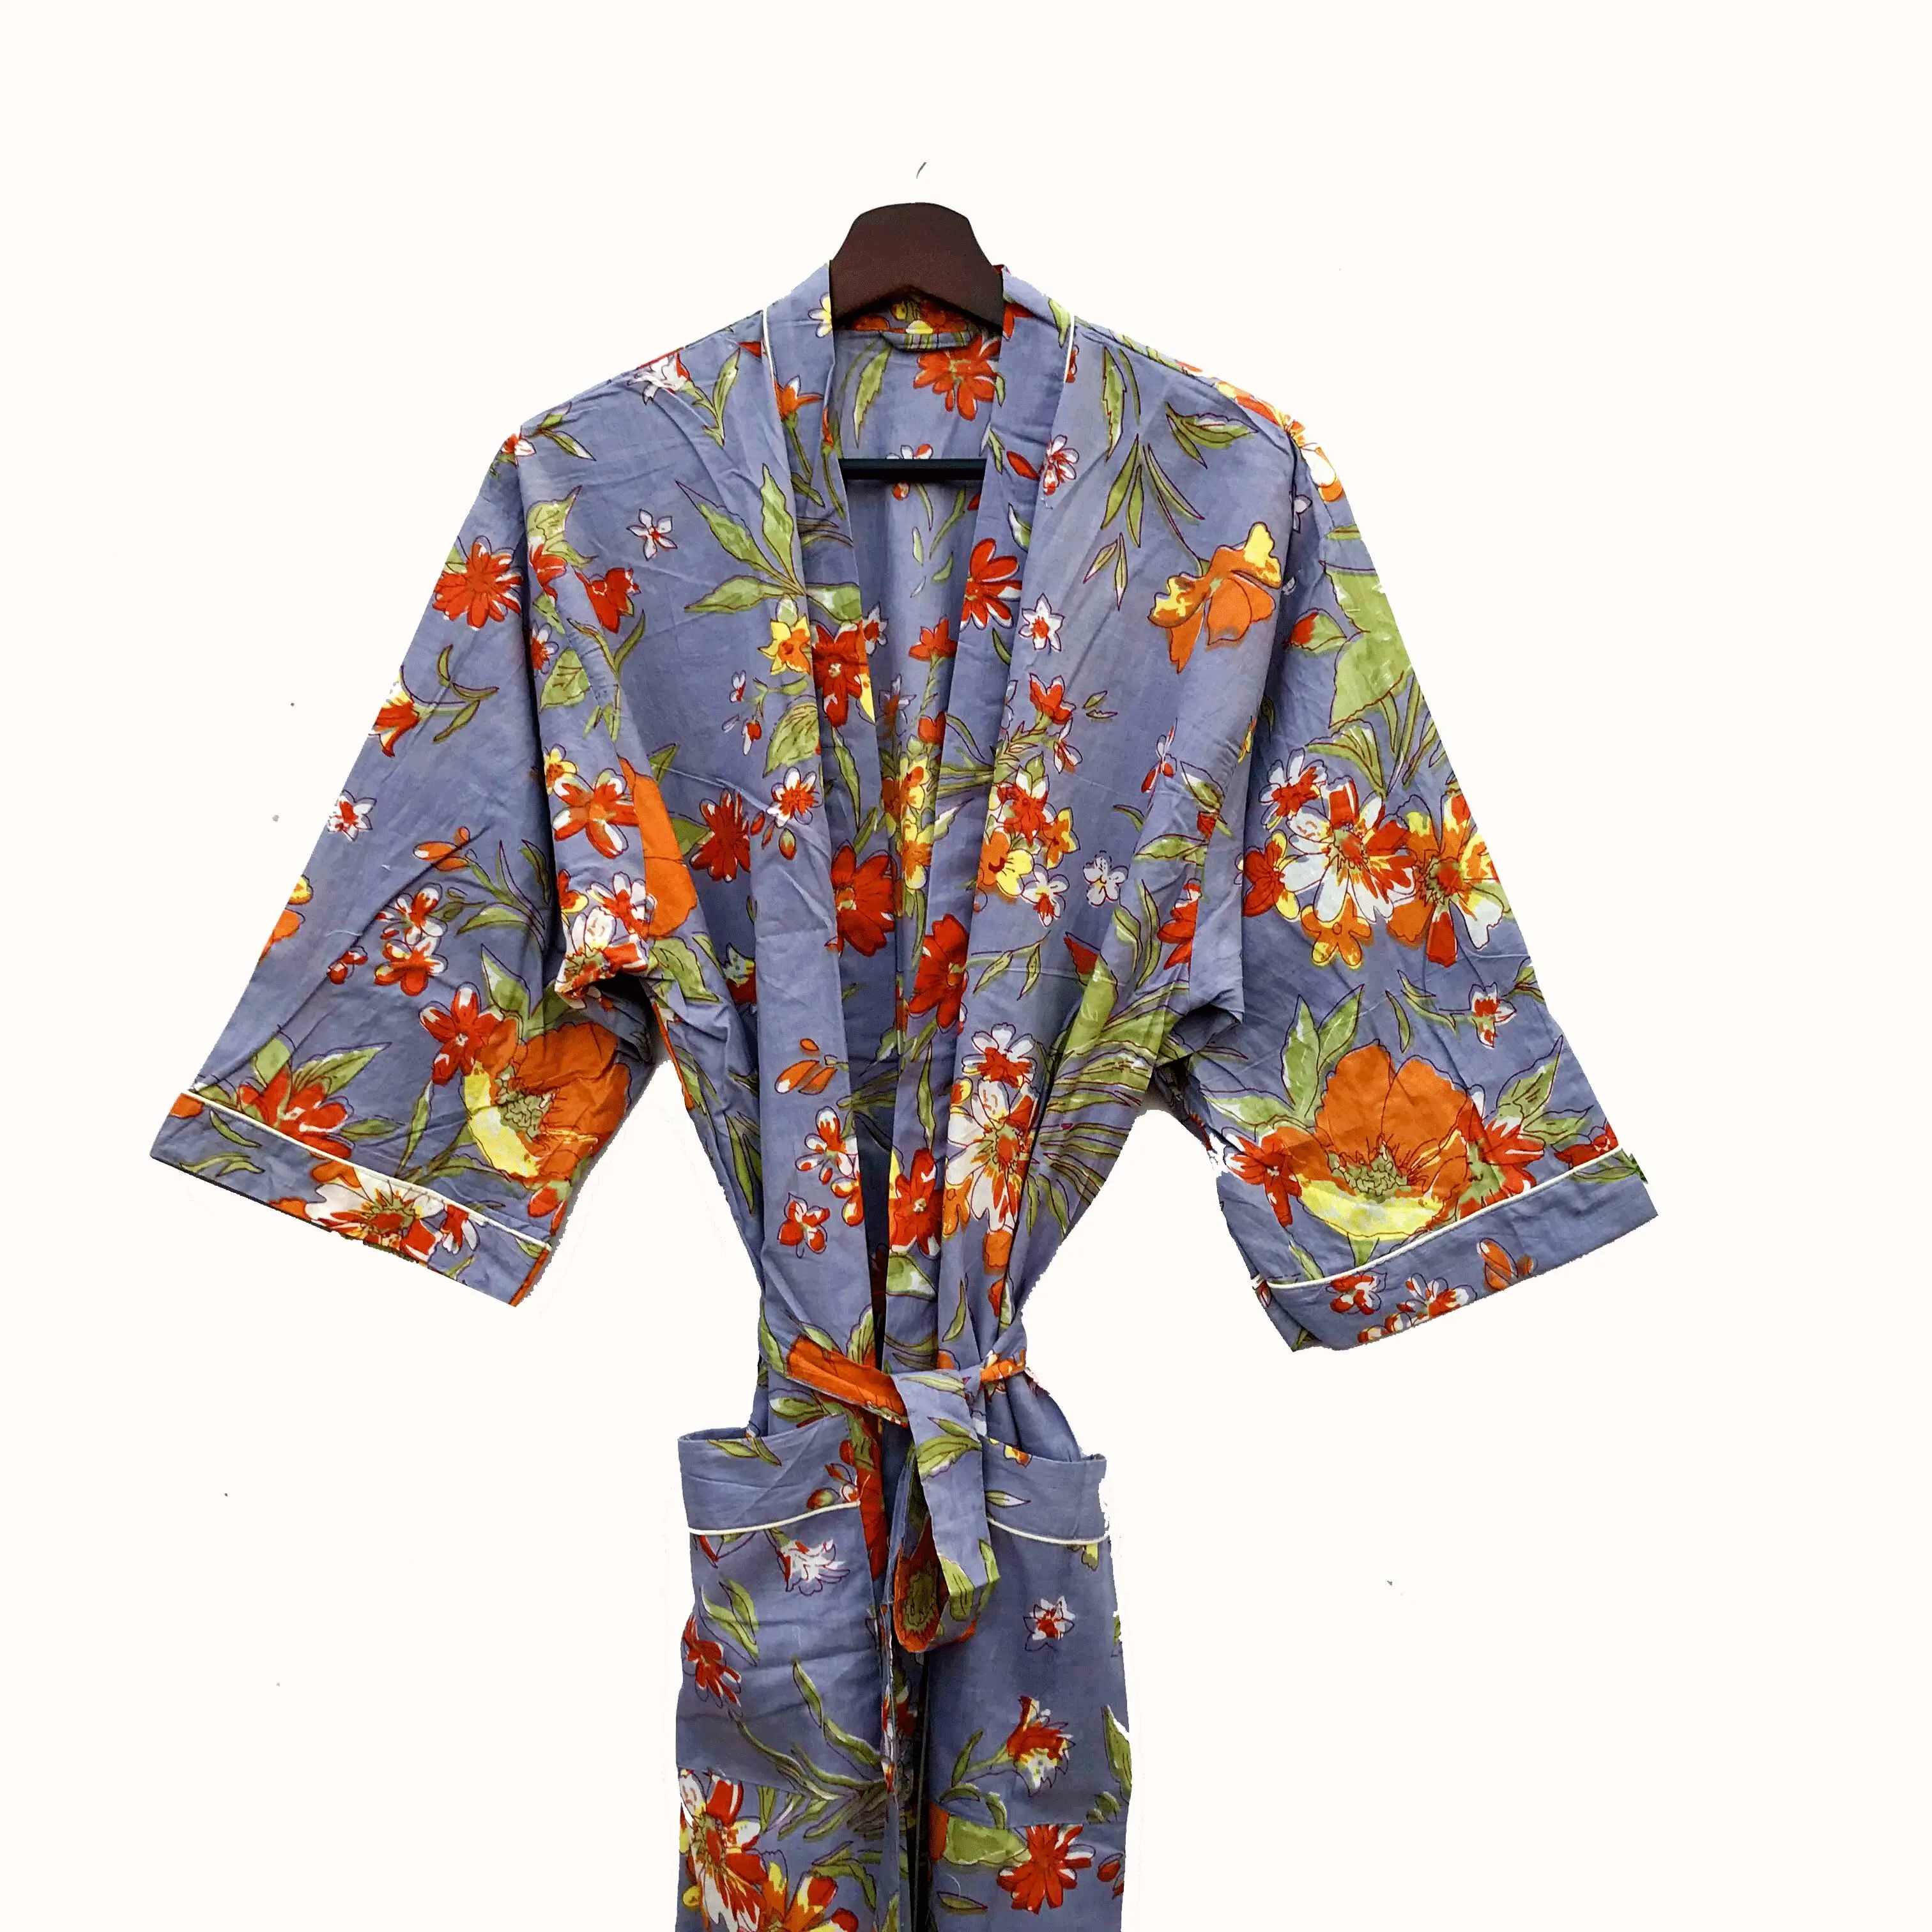 Neuankömmling Baumwolle Damen Sommer Kimono Beach wear Bademantel Nachtwäsche Kleid Maxi Lounge Wear Kleid